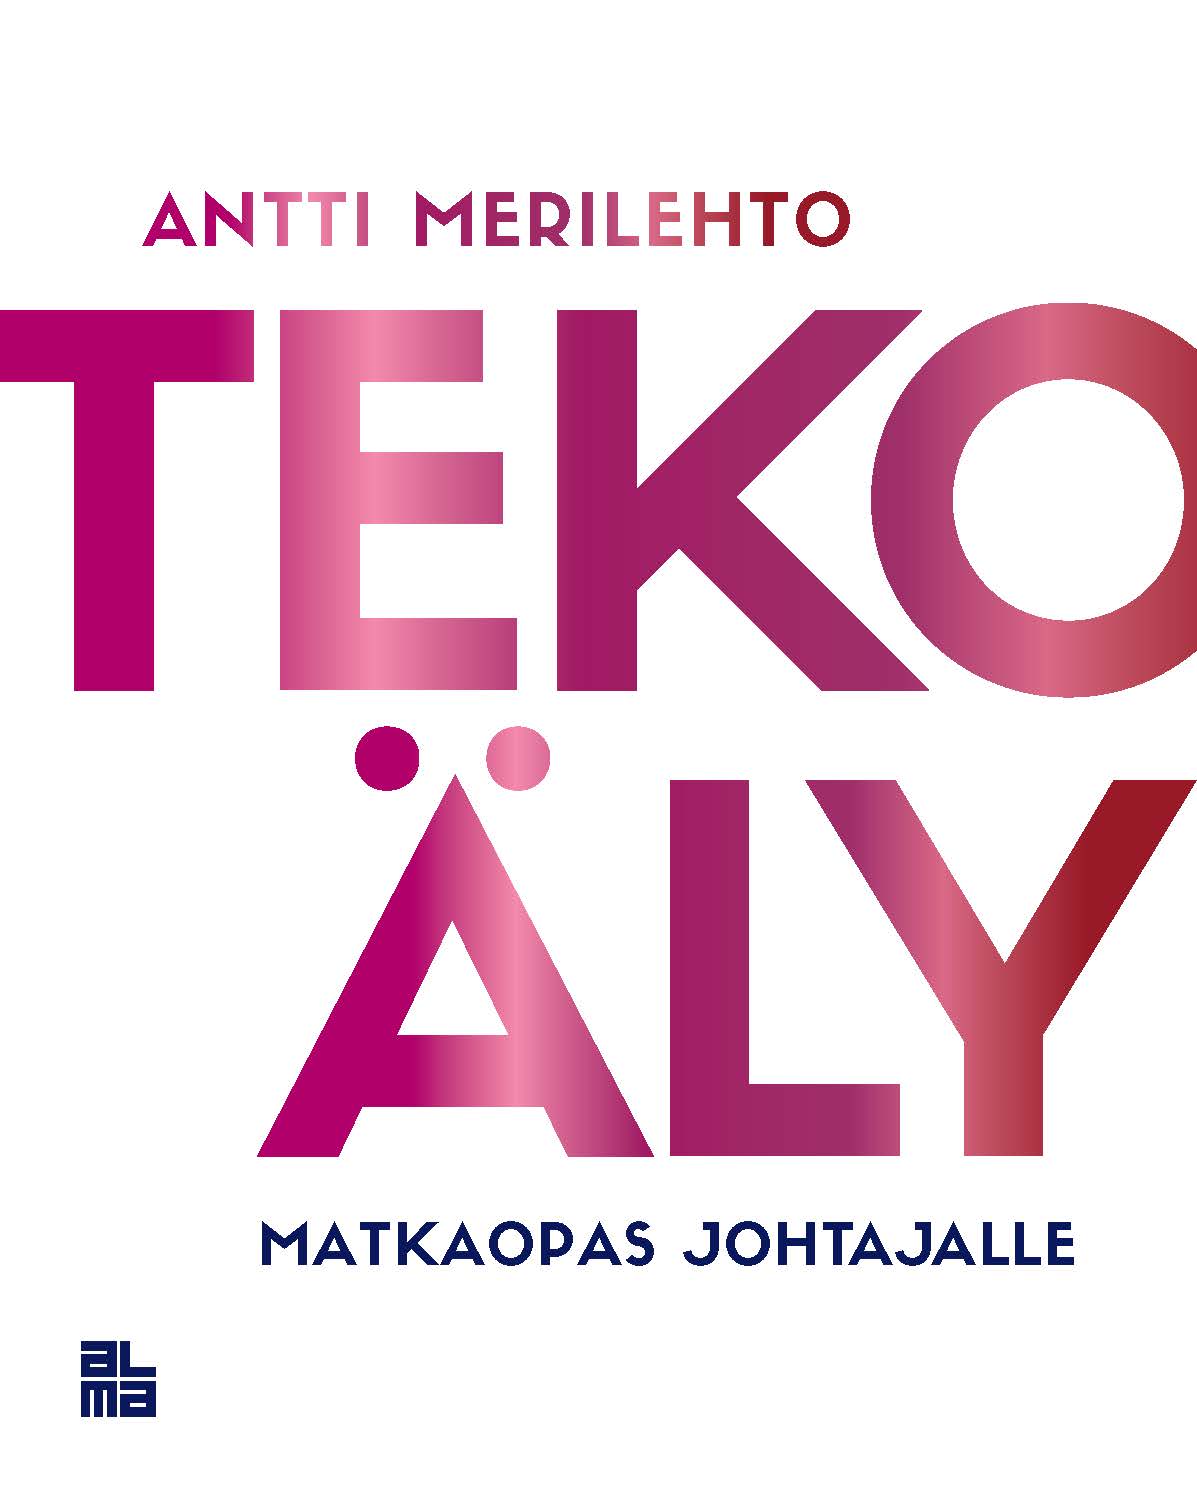 Merilehto, Antti - Tekoäly, audiobook